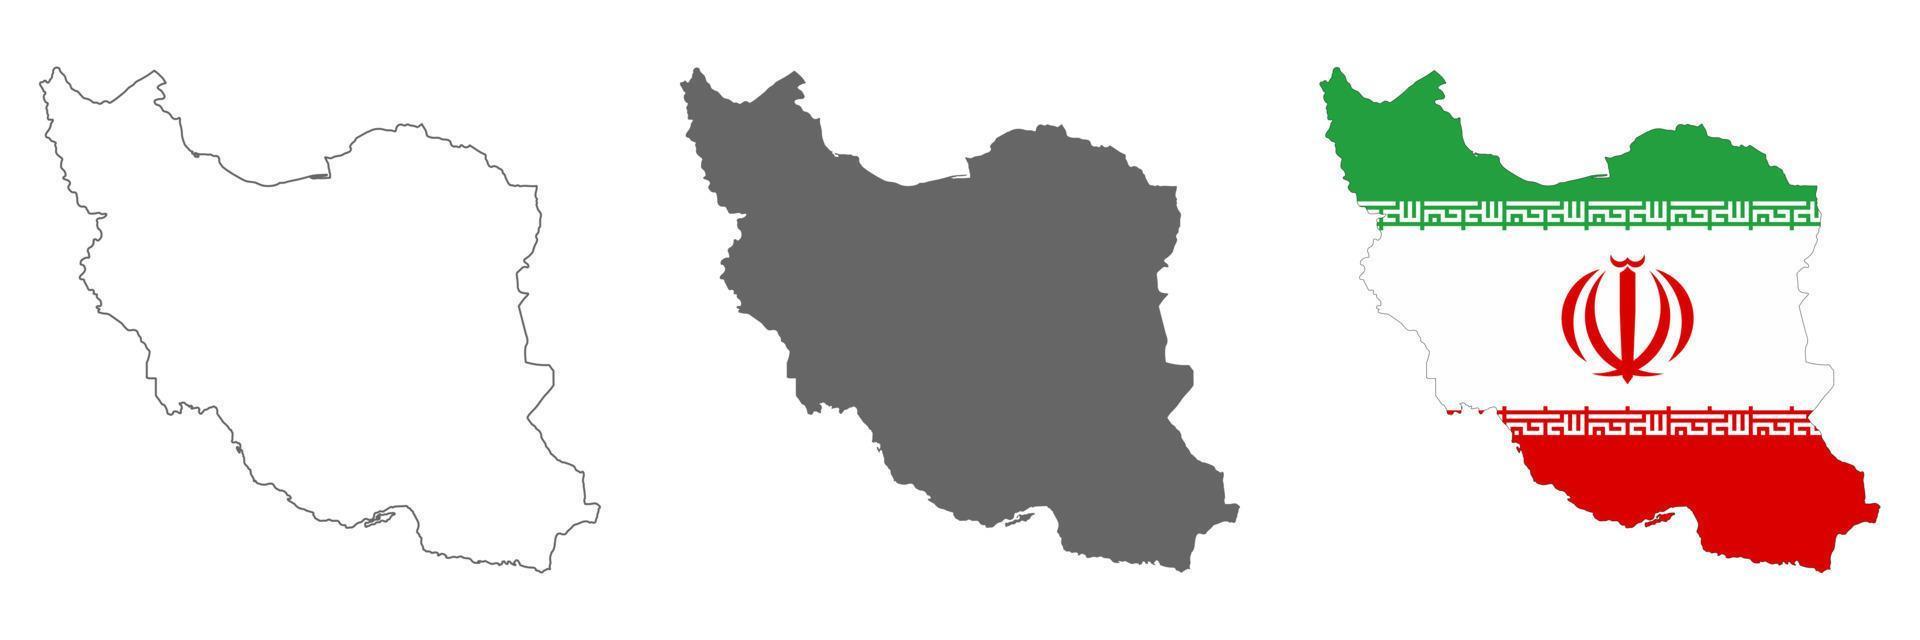 mappa dell'iran altamente dettagliata con bordi isolati su sfondo vettore